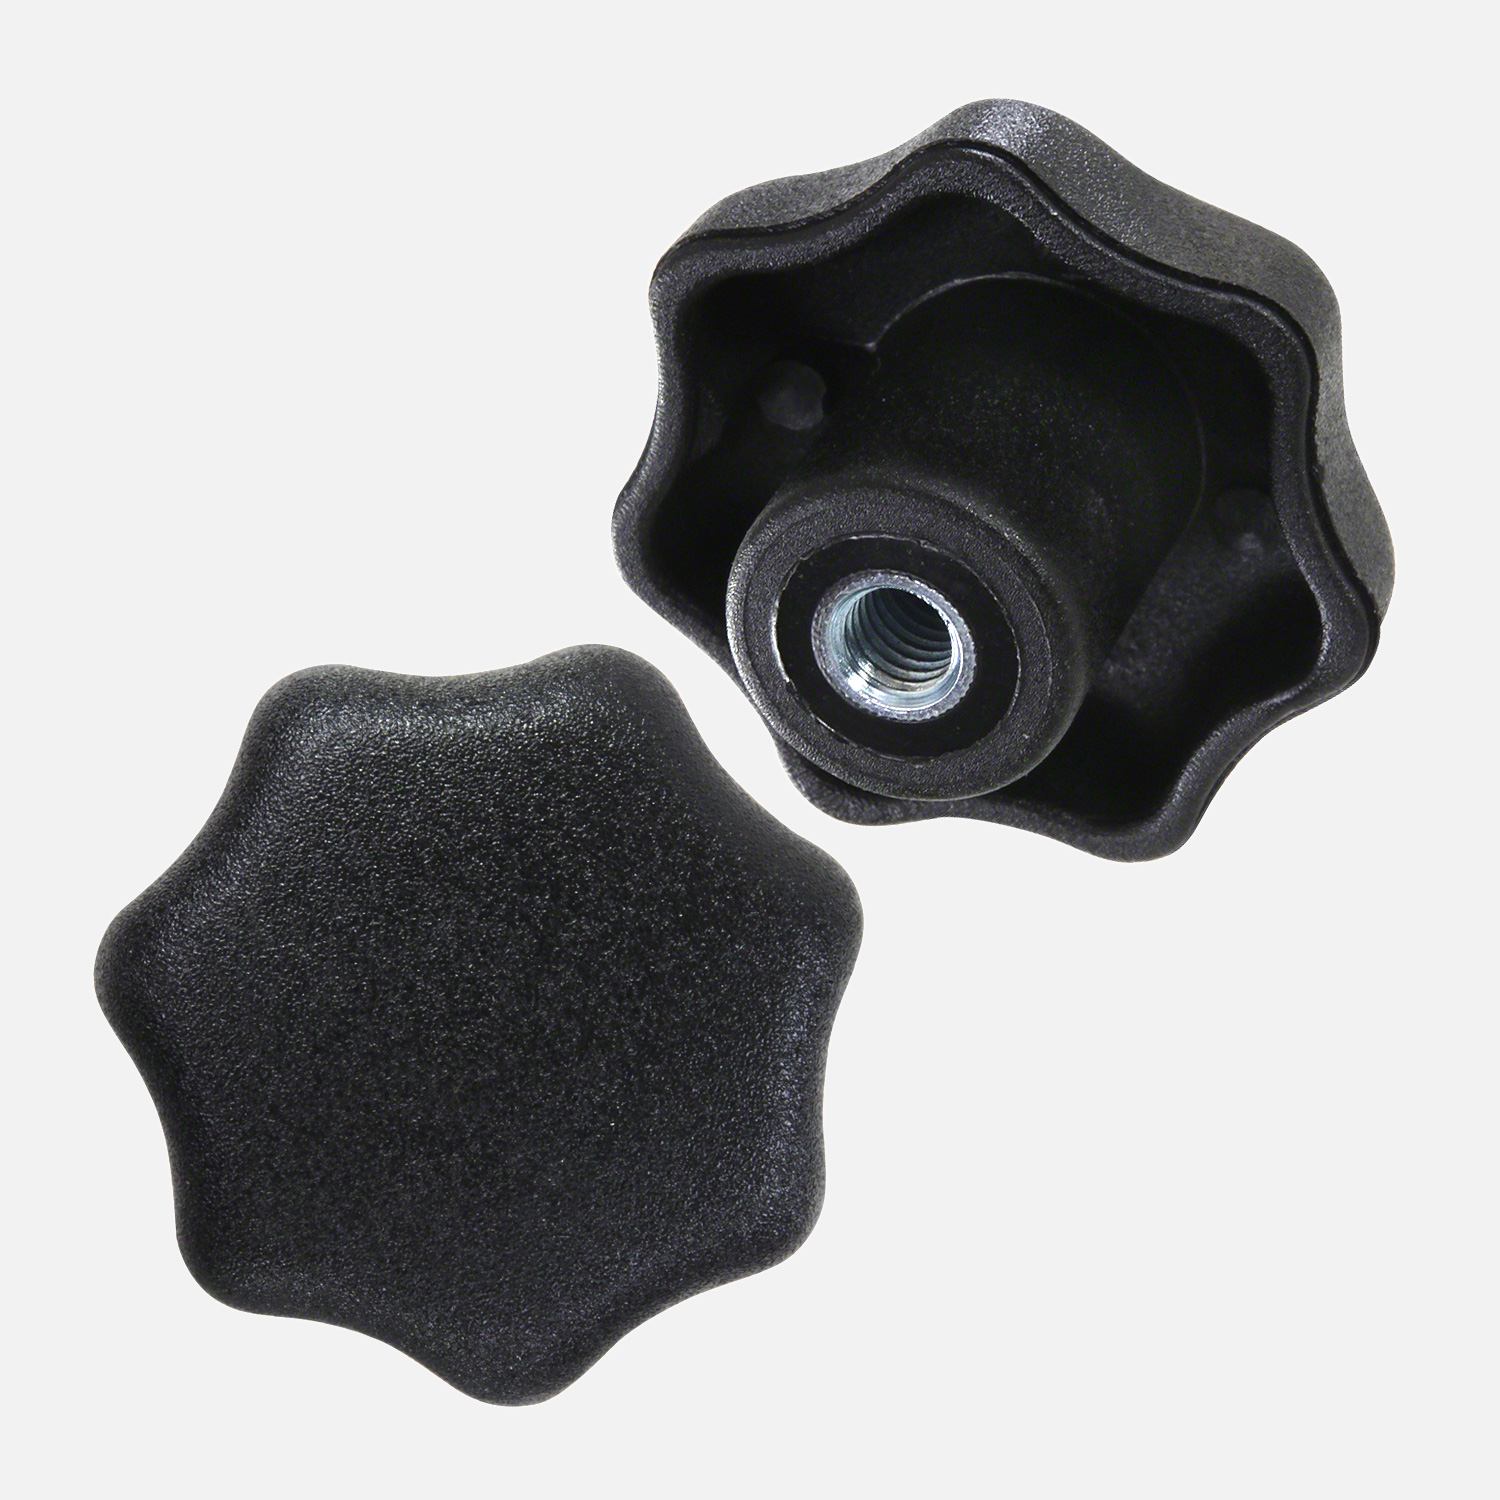 Sterngriffe DIN 6336 - M 8 - Kopf 40mm - Kunststoff schwarz - Gewindebuchse  Stahl verzinkt